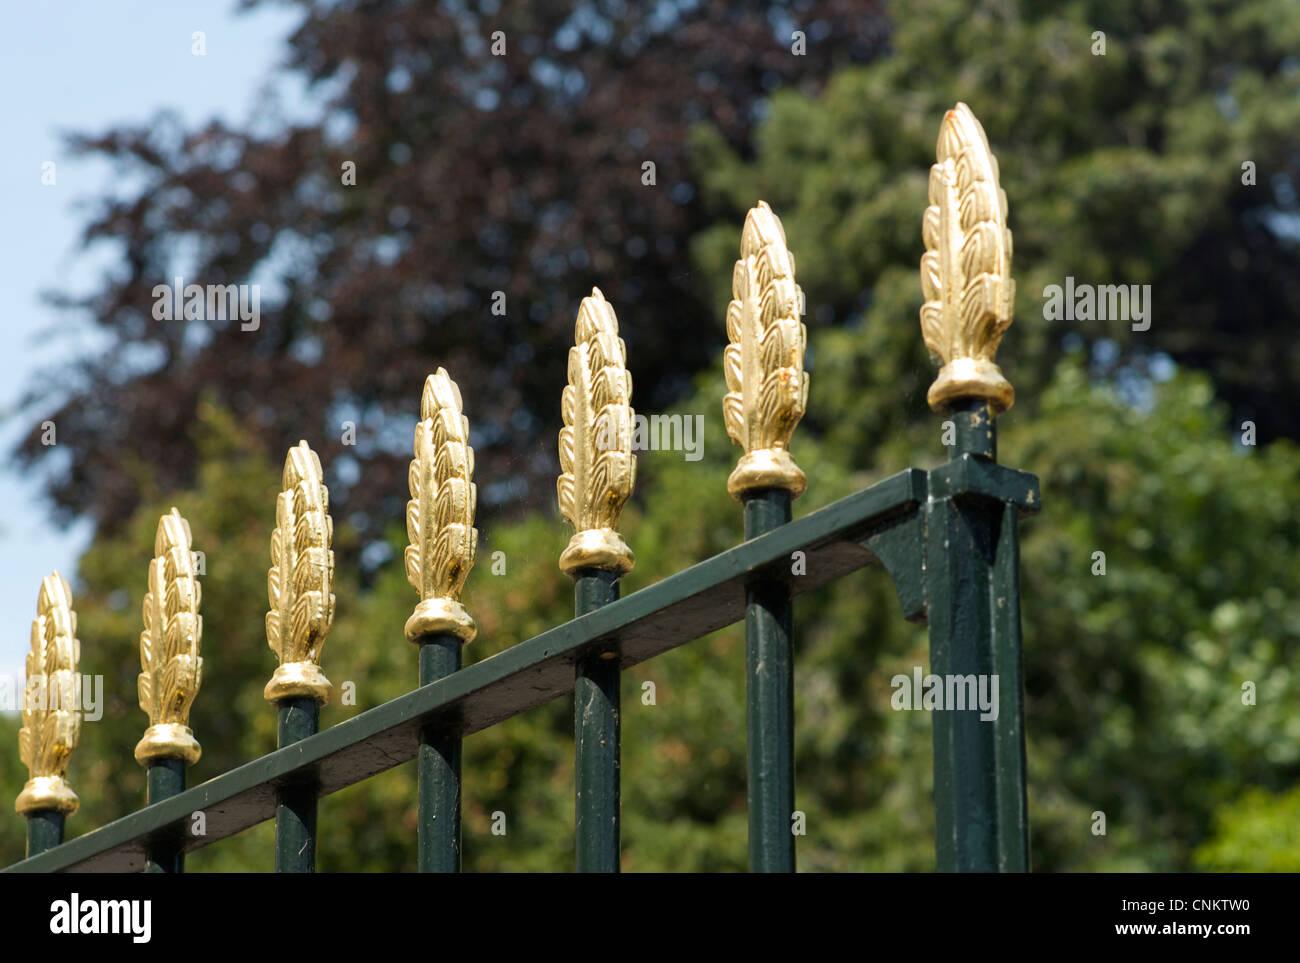 Iron railing with gold tips, UK Stock Photo